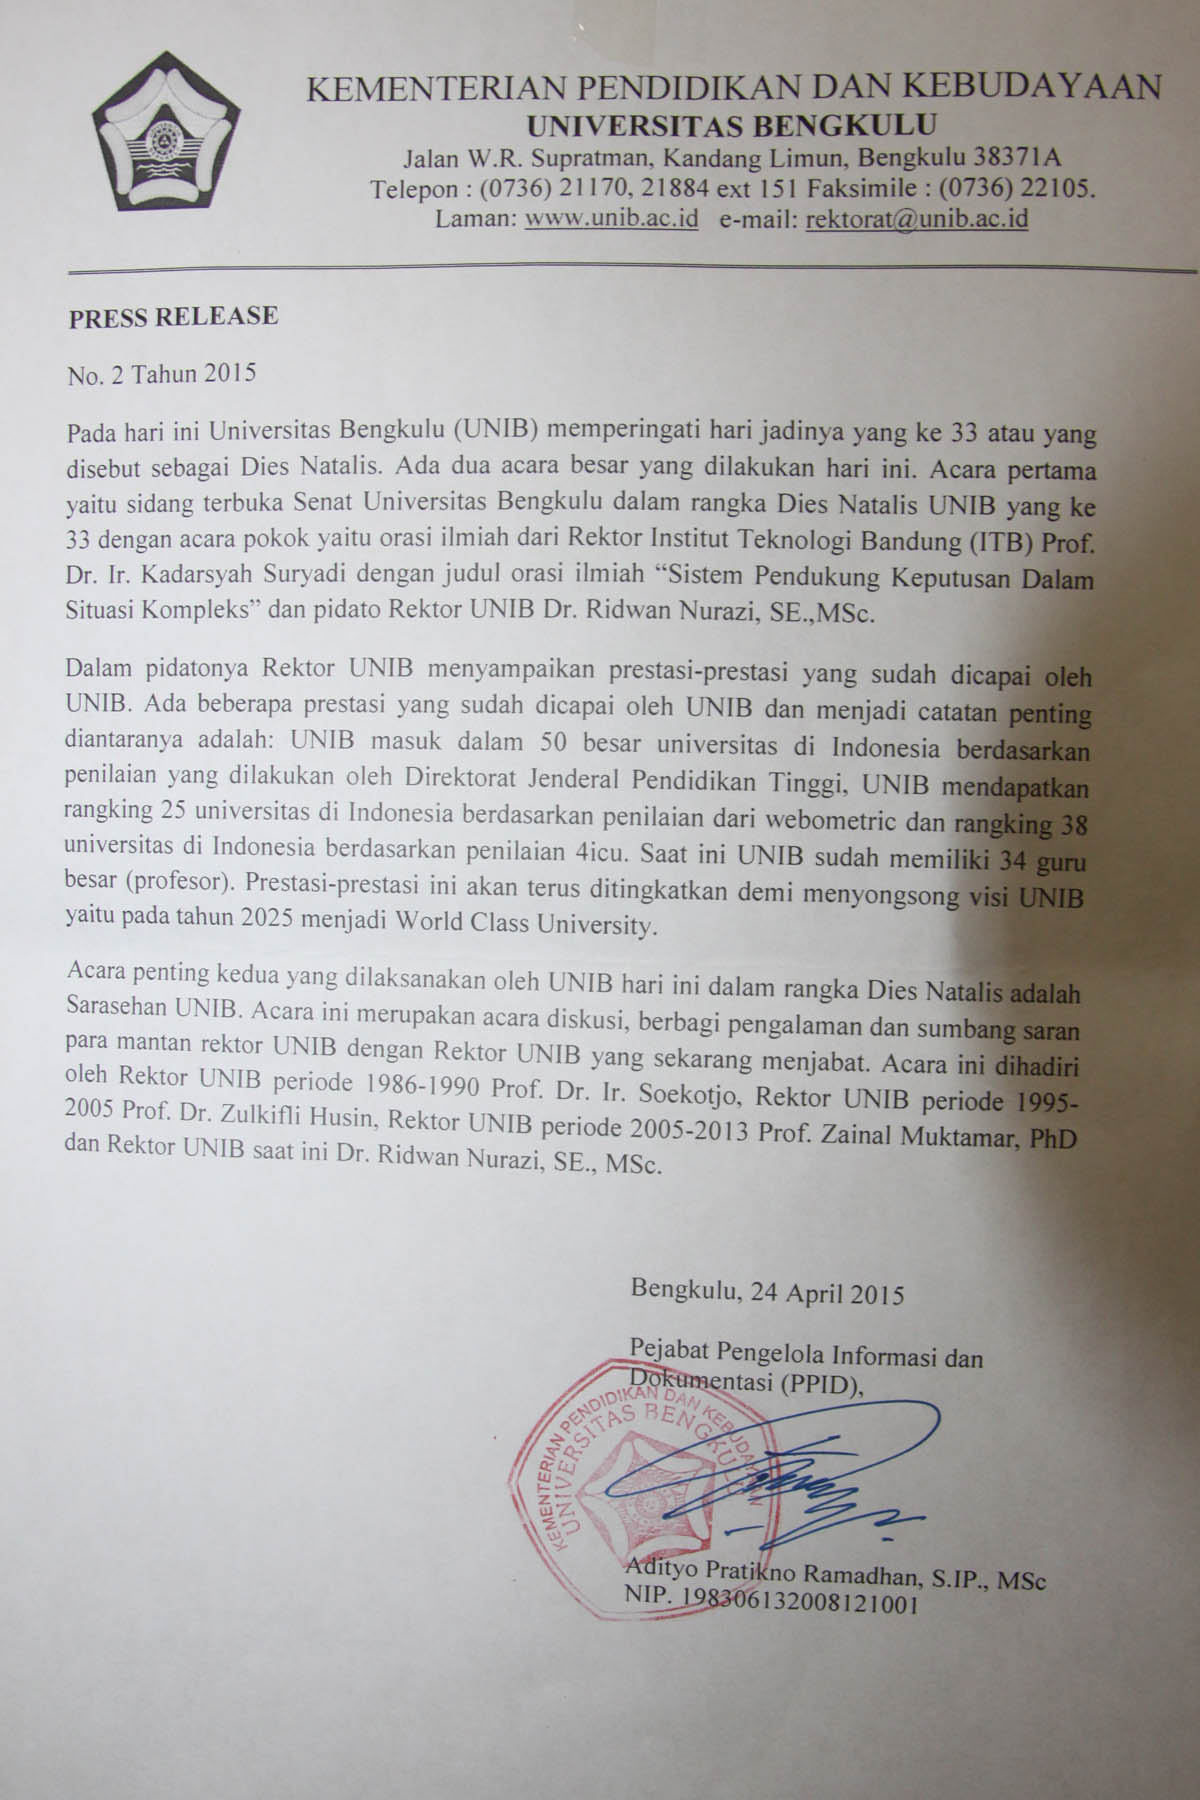 PRESS RELEASE PPID UNIB NO 2 TAHUN 2015 : ACARA DIES NATALIS KE-33 UNIB